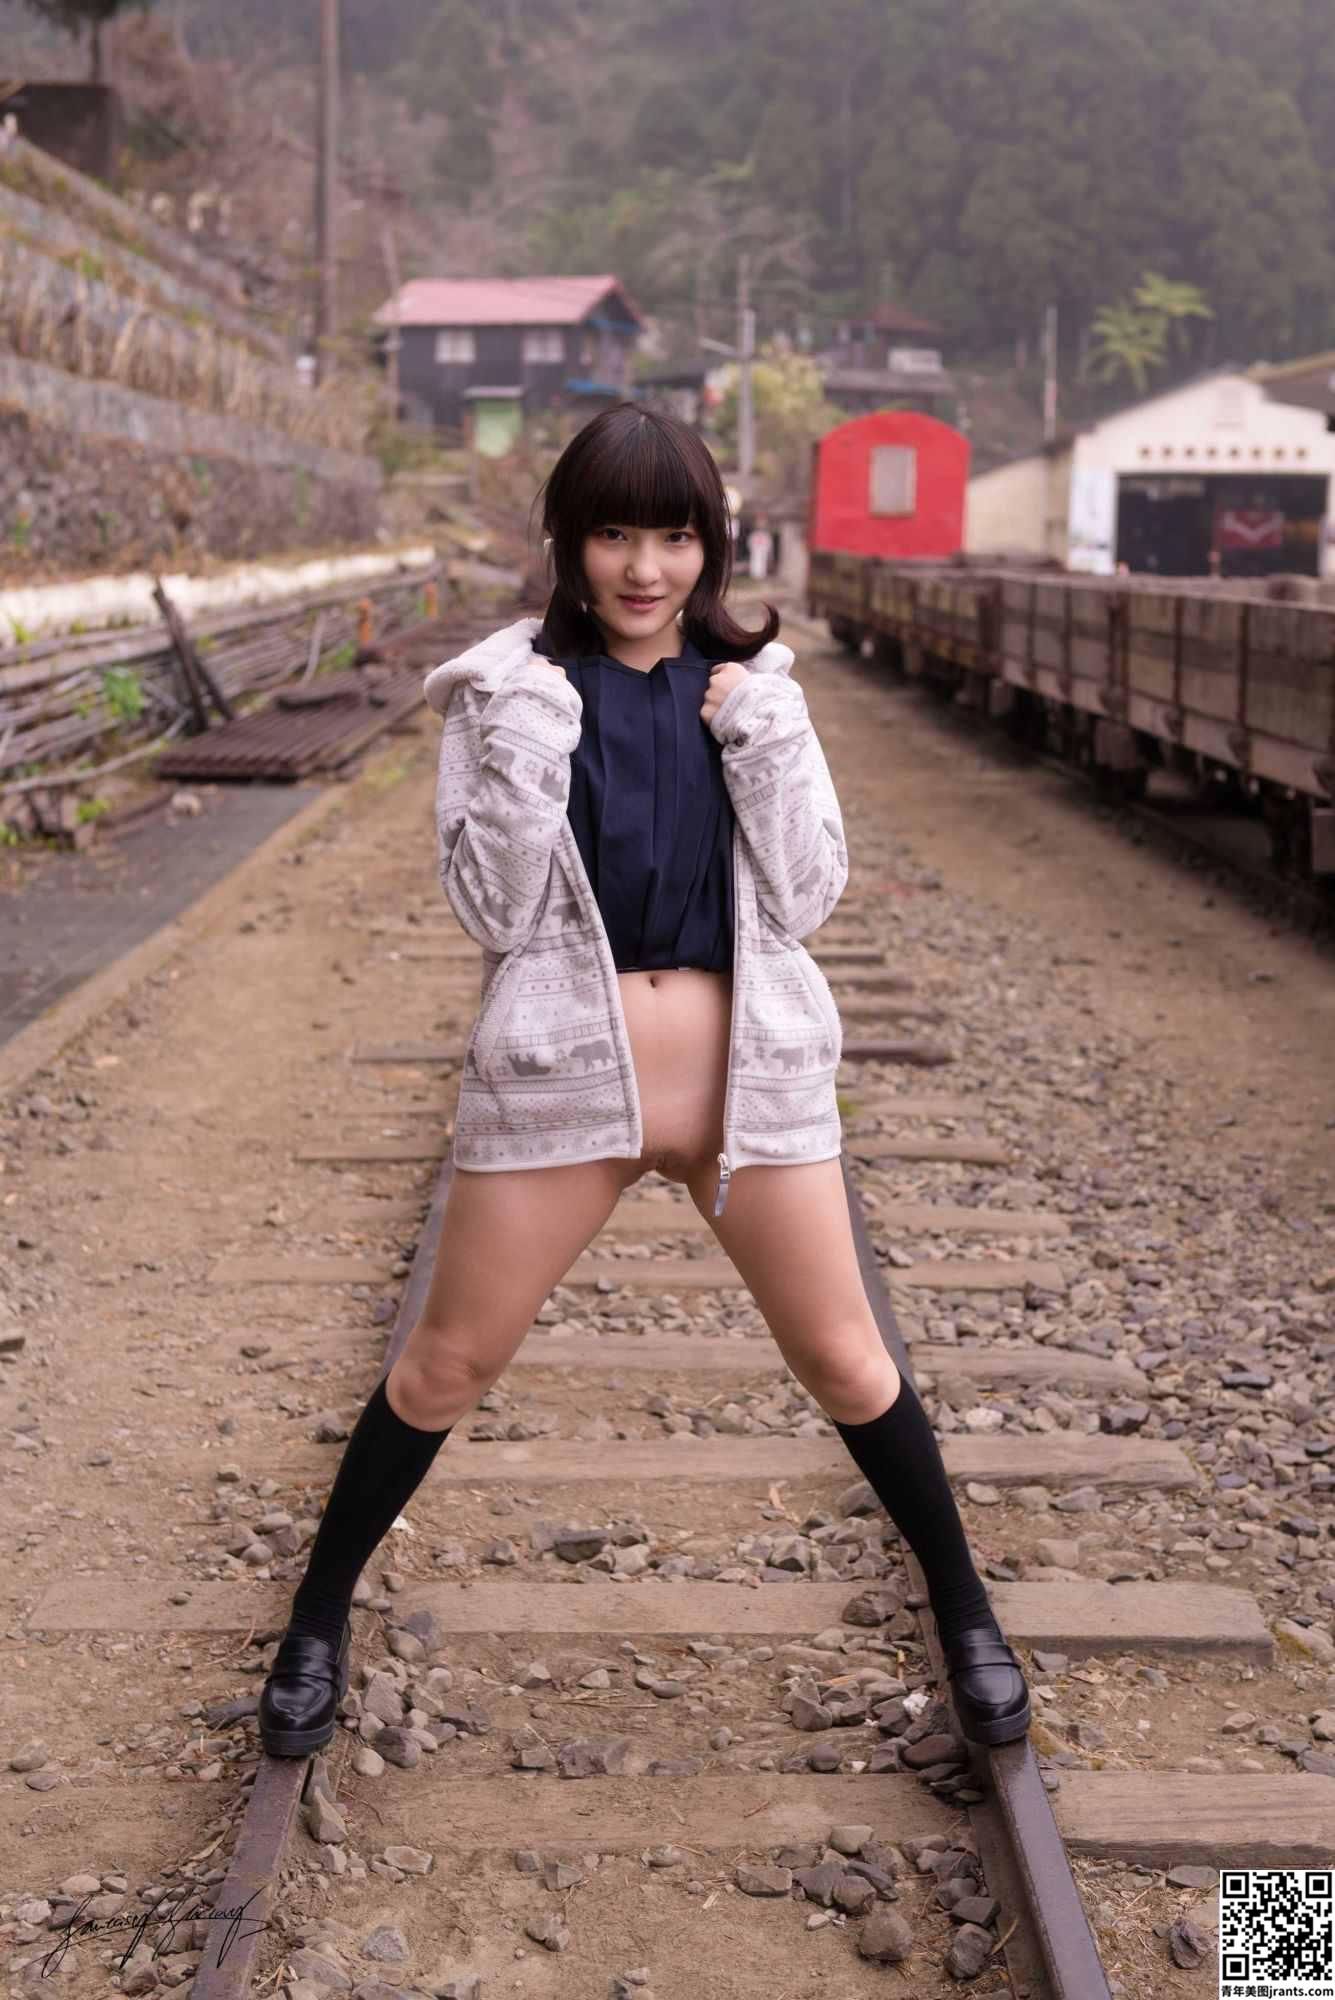 小丁Patron 茶园 High School Girl show her pussy in public (38P)